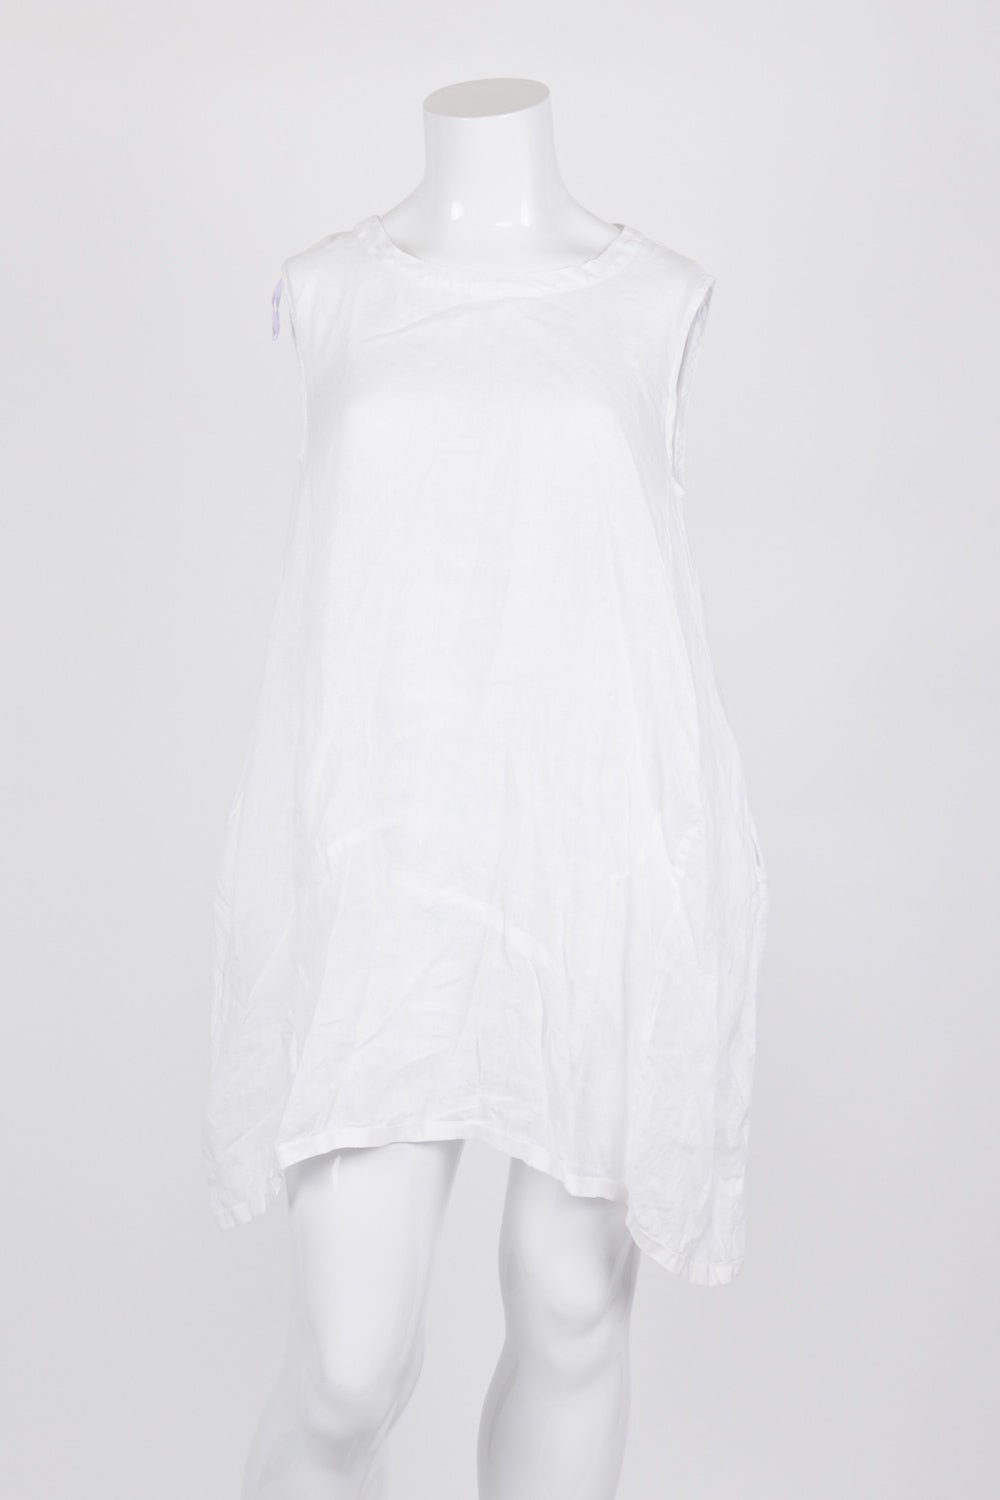 Banana Blue White Sleeveless 100% Linen Dress M